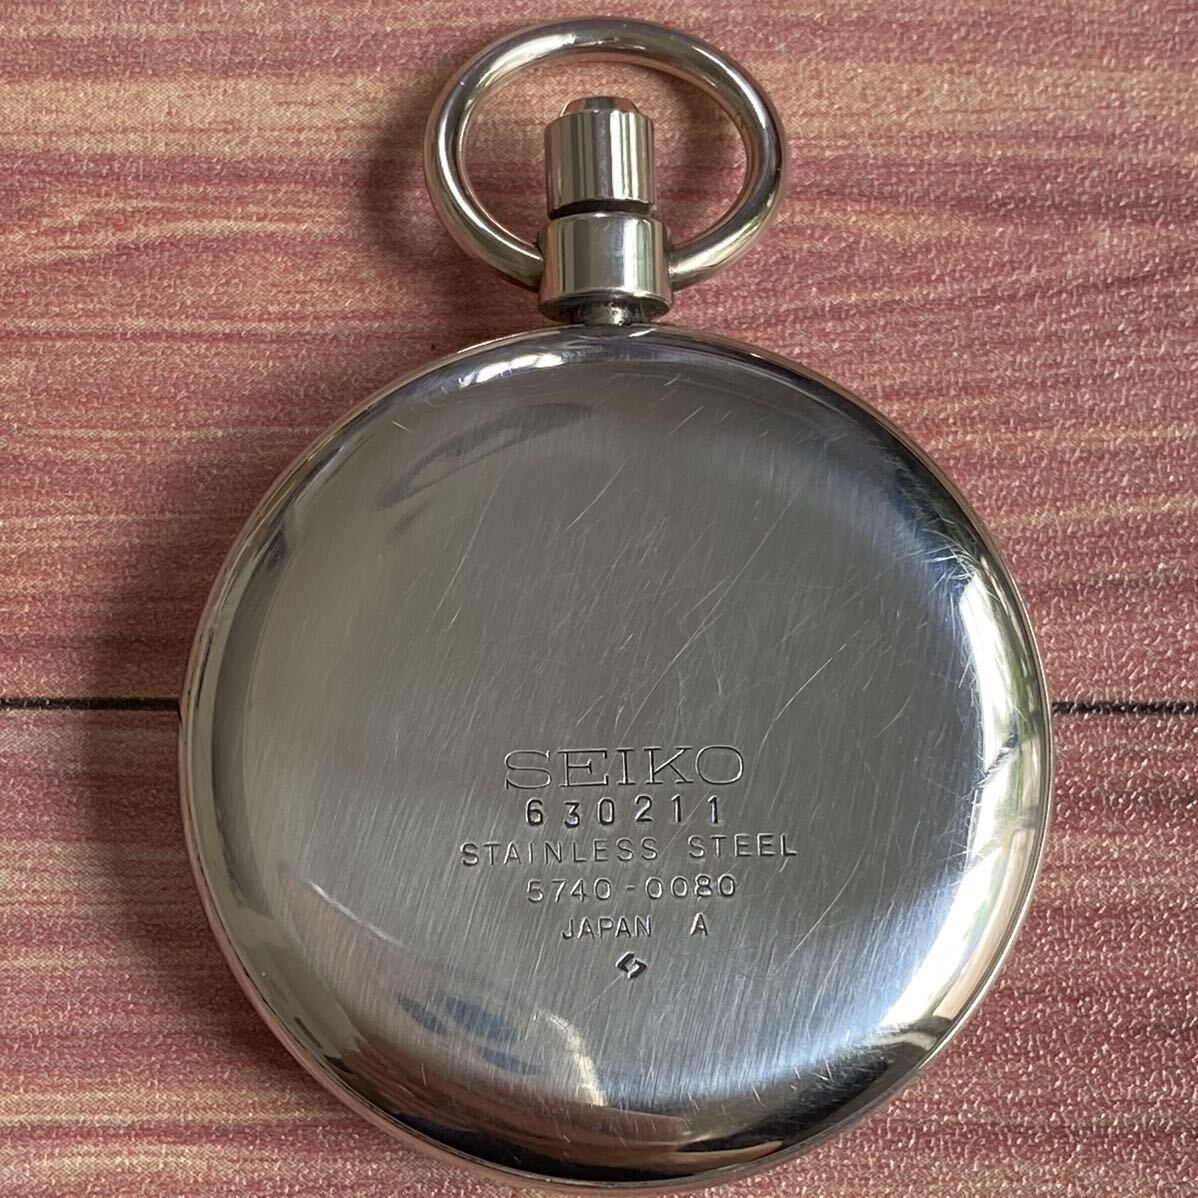  Seiko карманные часы load ma- bell 23 камень механический завод 5740-0080